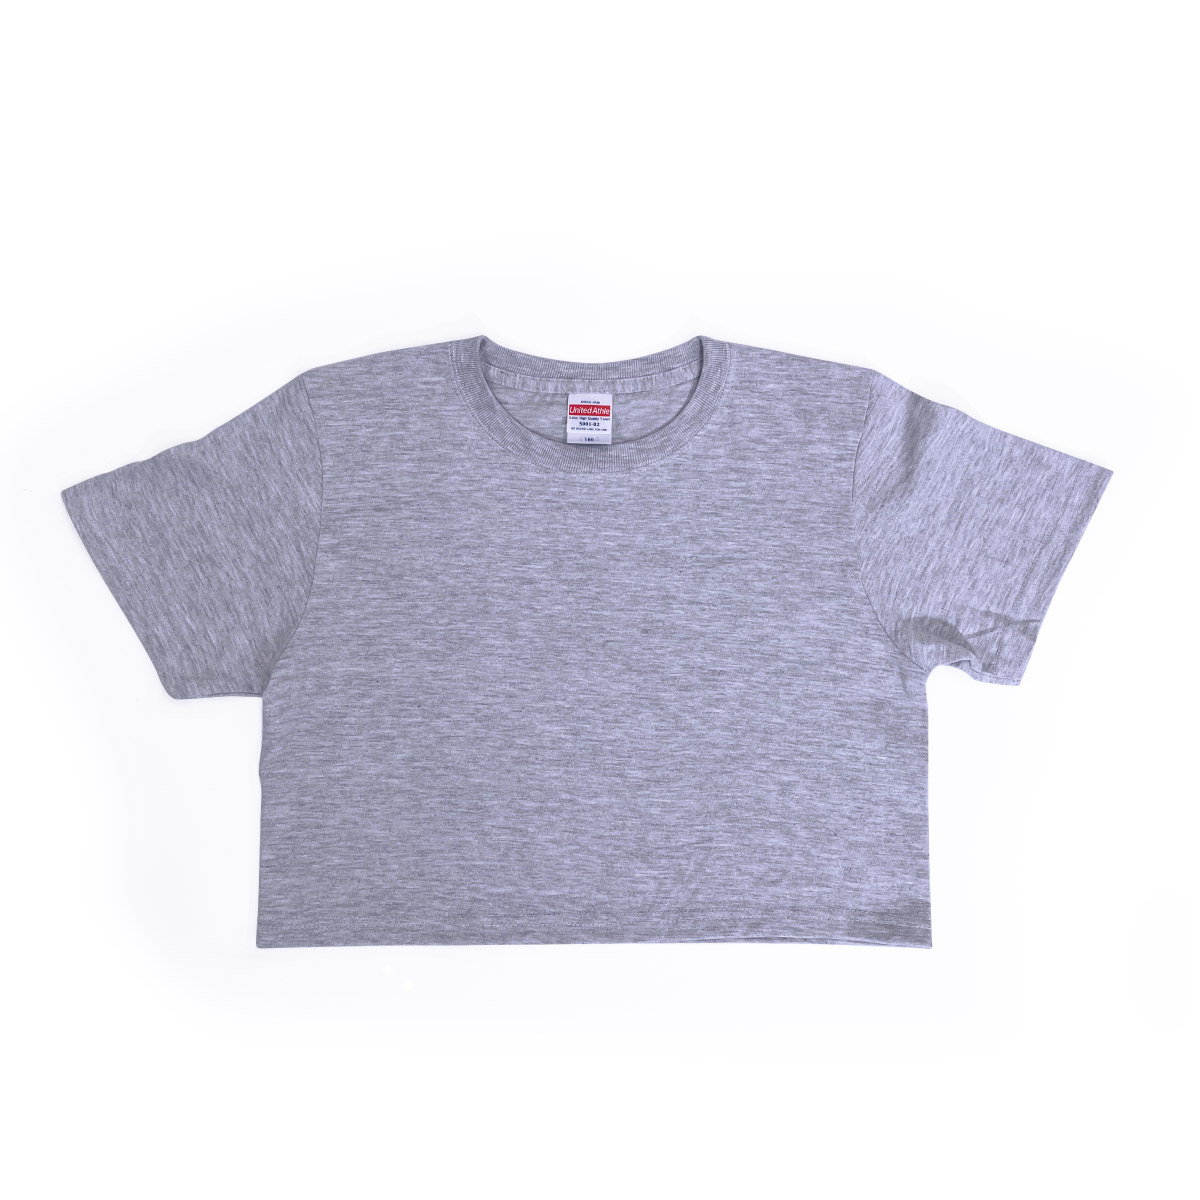 クロップド Tシャツ (品番CPSEW-5001-02)